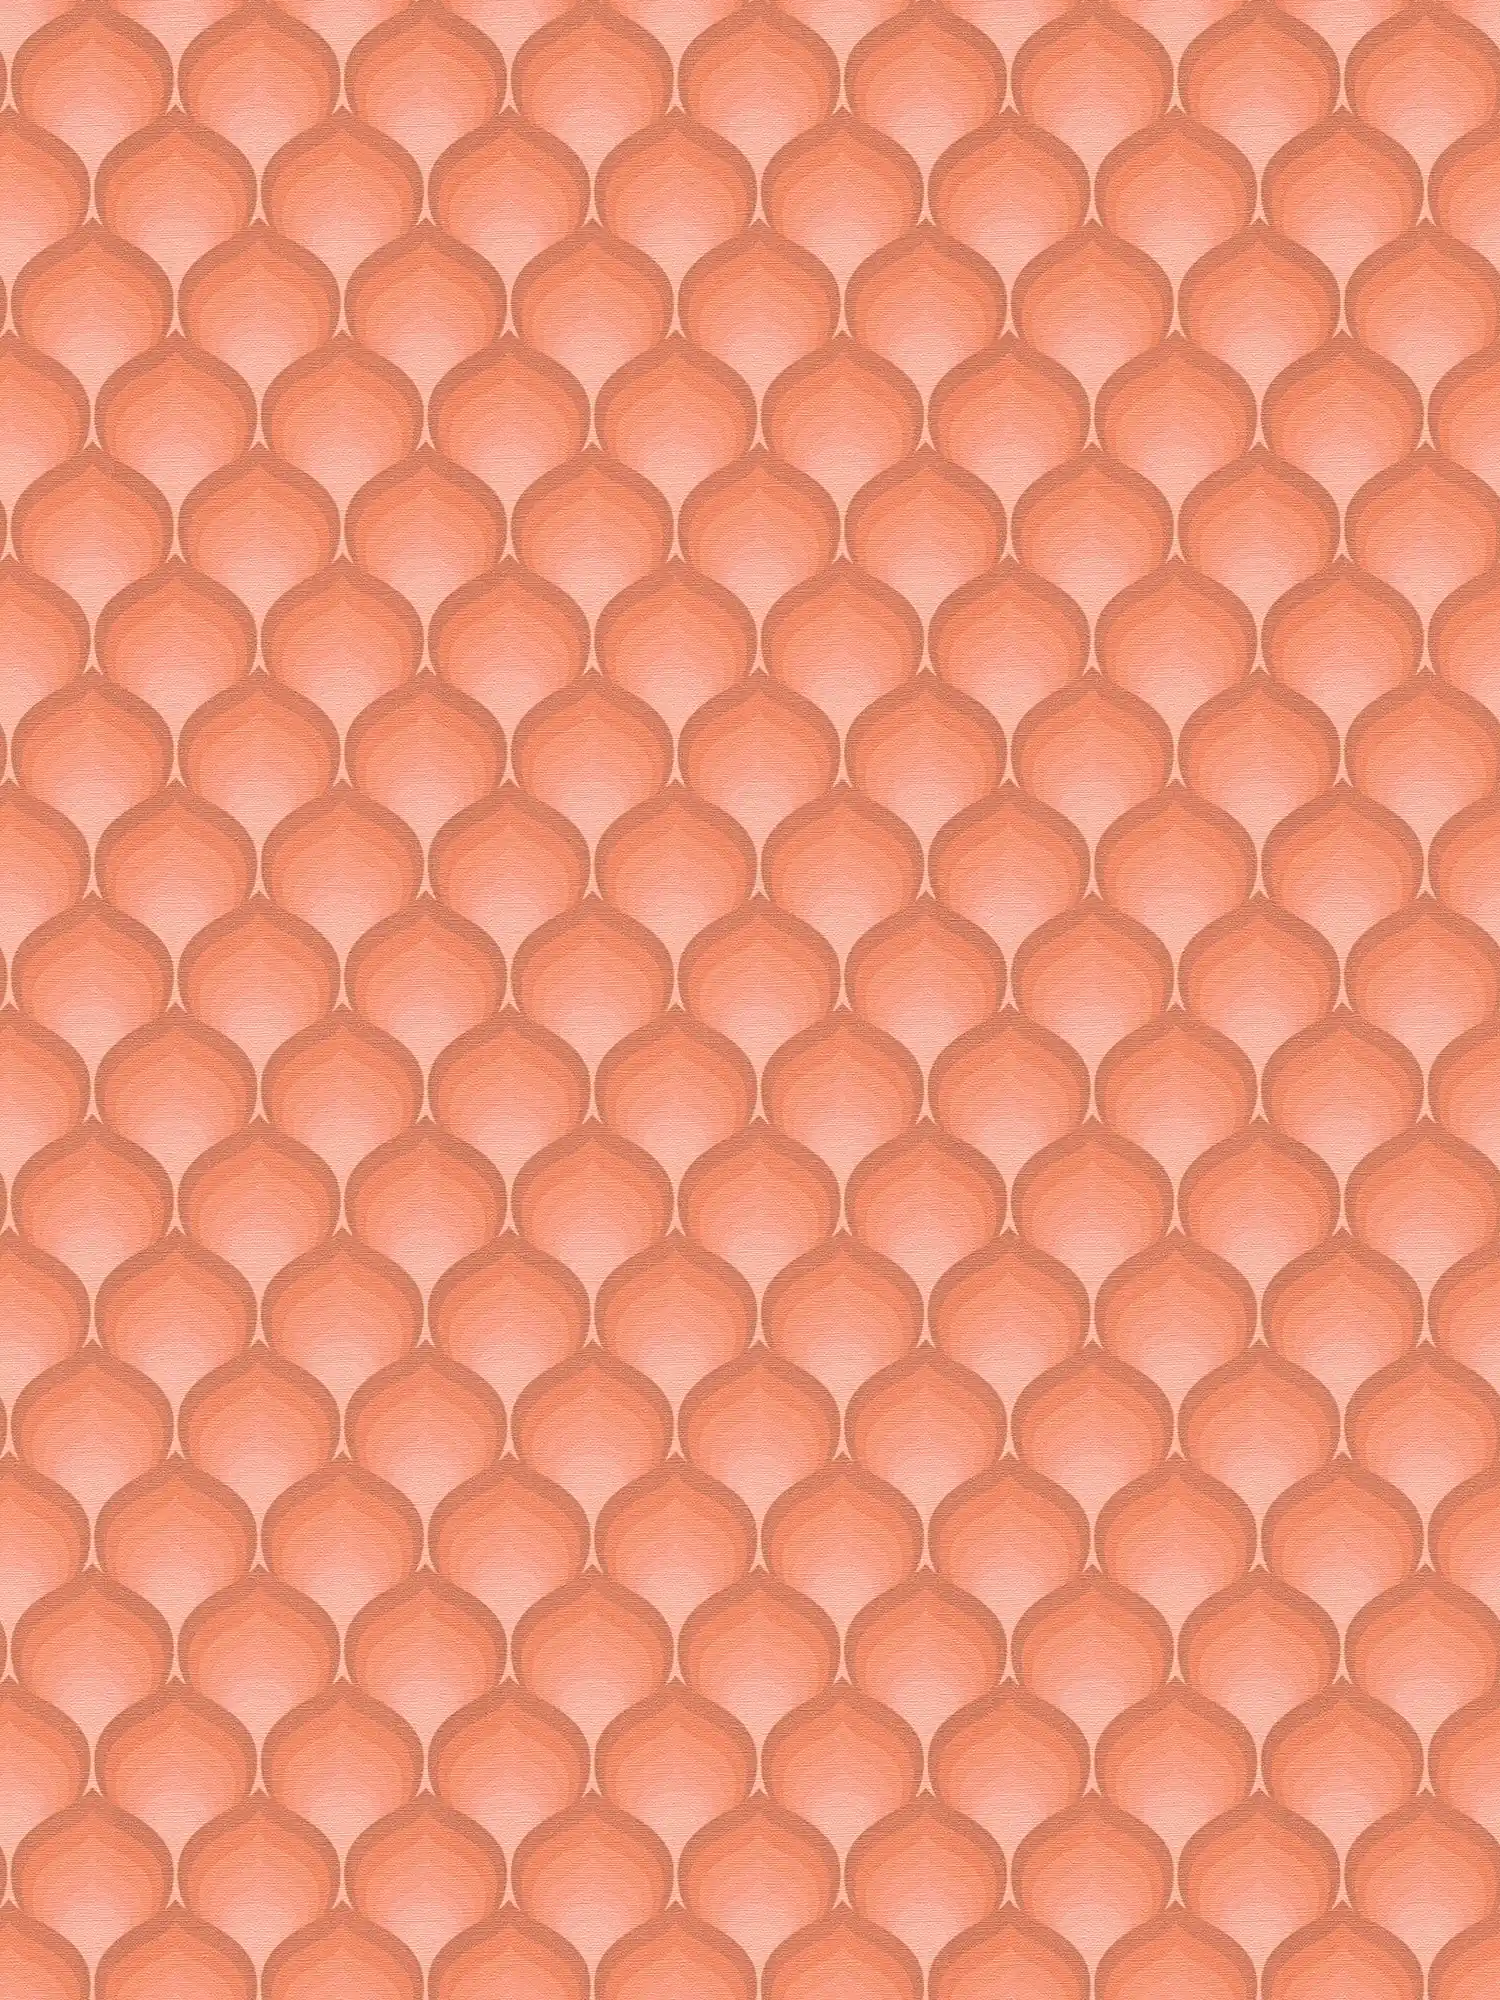 papier peint en papier intissé rétro avec motif écailles dans des couleurs chaudes - orange, rouge, rose
